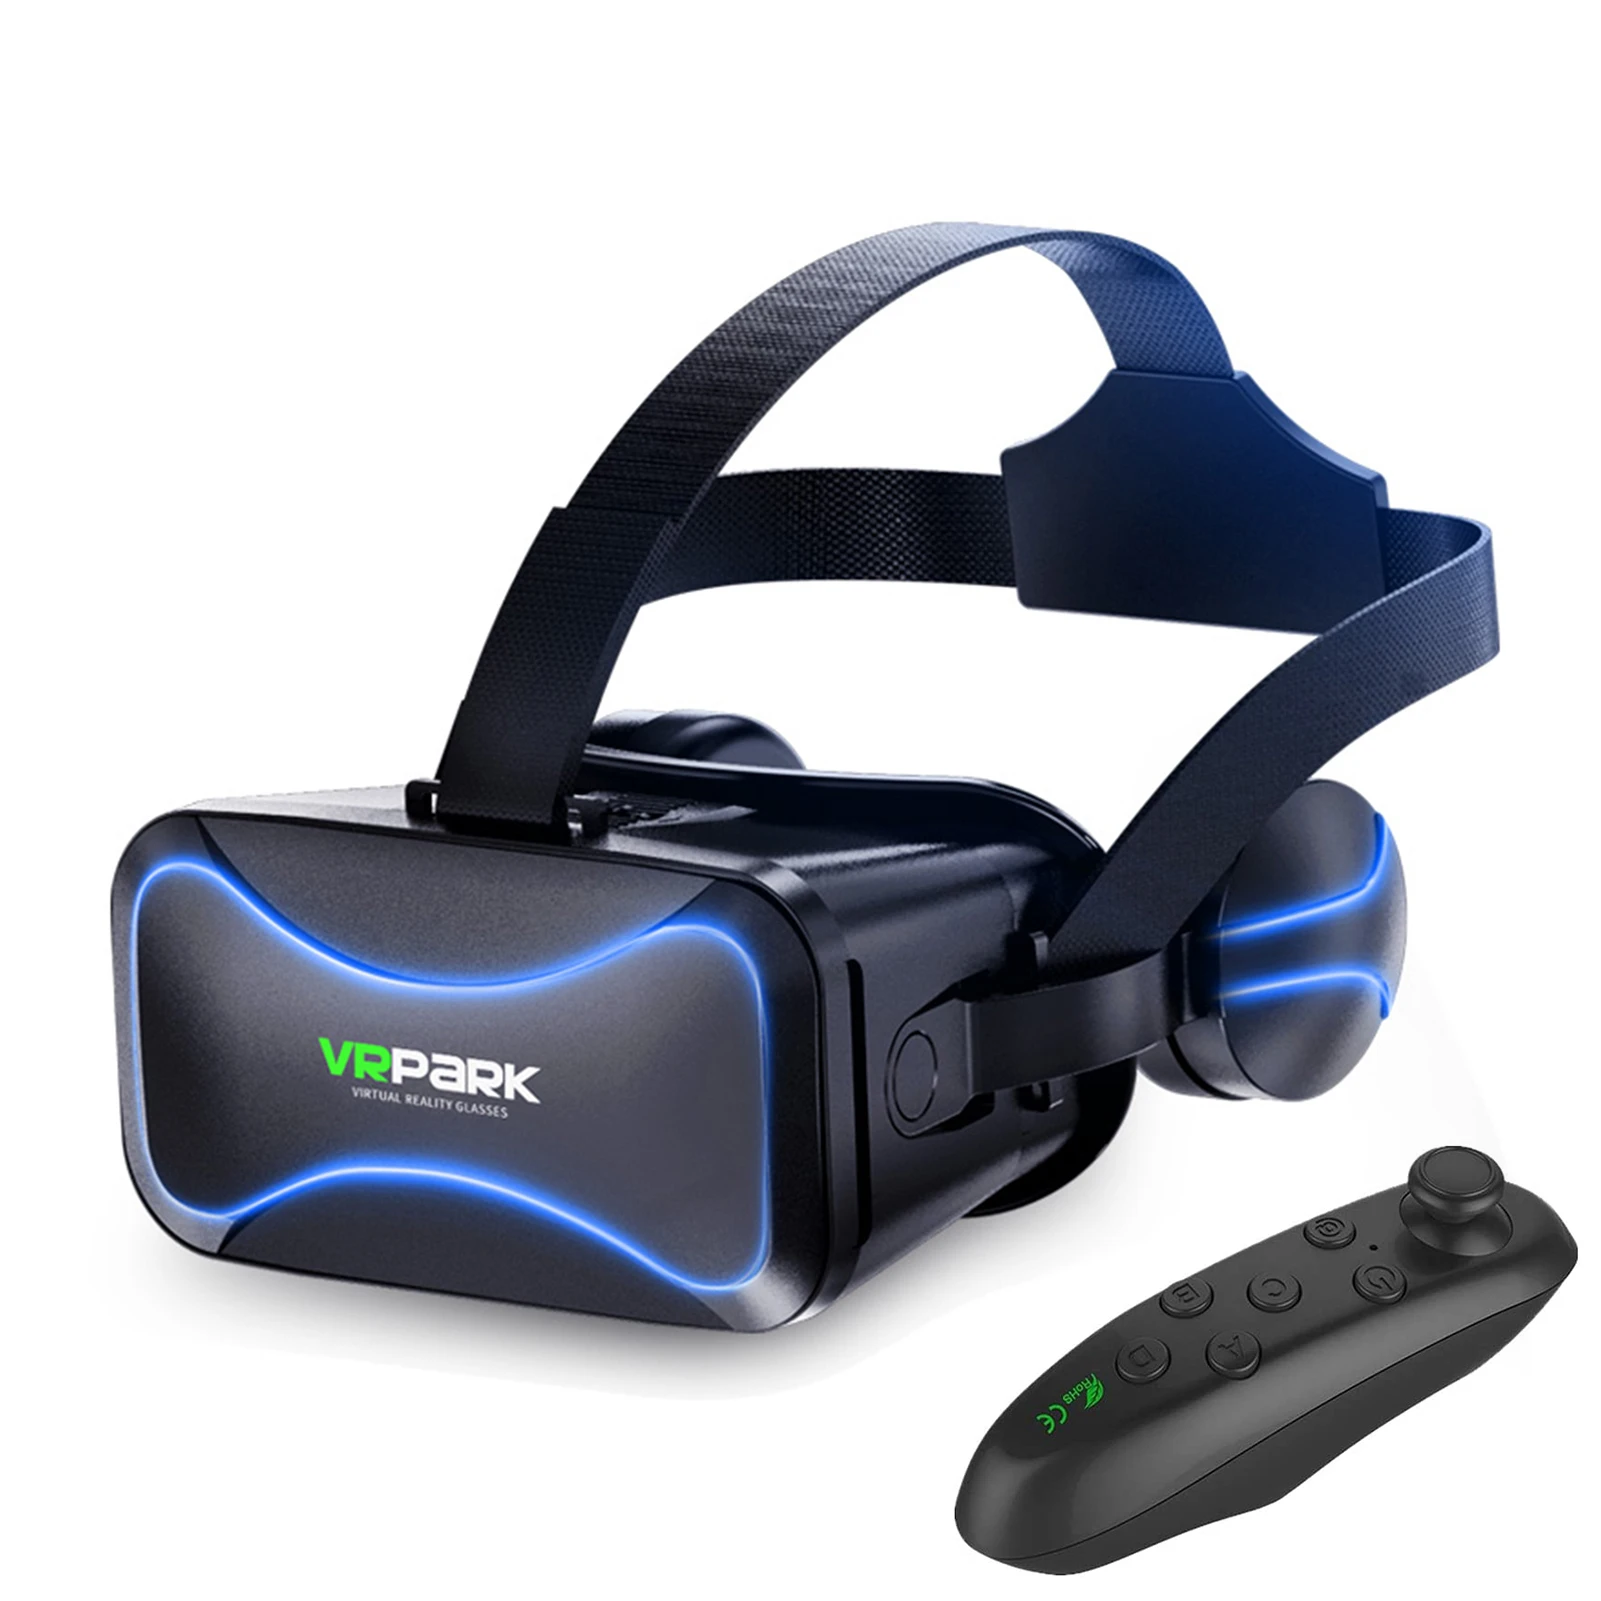 Goed Kraan En team 3D Vr Bril 3D Virtual Reality Ondersteuning 0 600 Bijziendheid Verrekijker  Bril Headset Vr Bril Voor 3.5 6 inch Smartphone Apparaten|3D Brillen/Virtual  Reality Brillen| - AliExpress